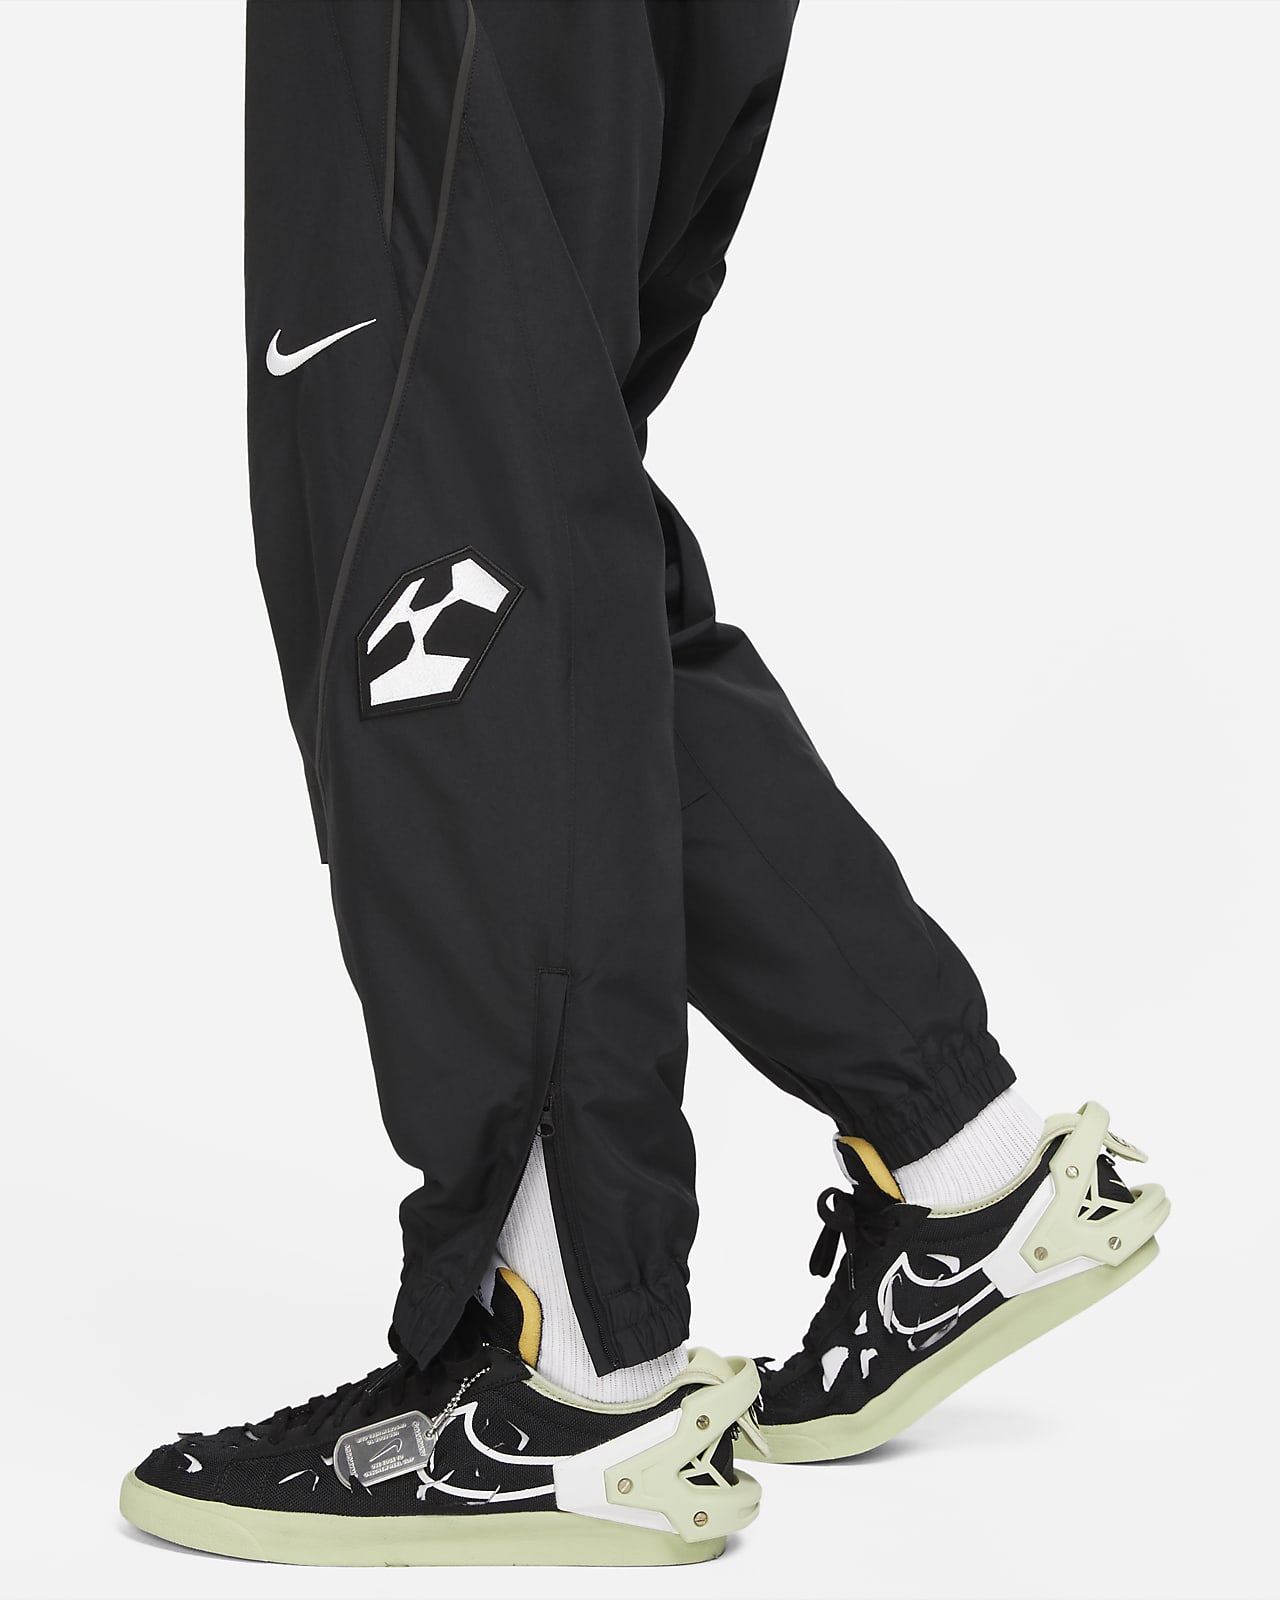 Nike x ACRONYM® Men's Woven Pants